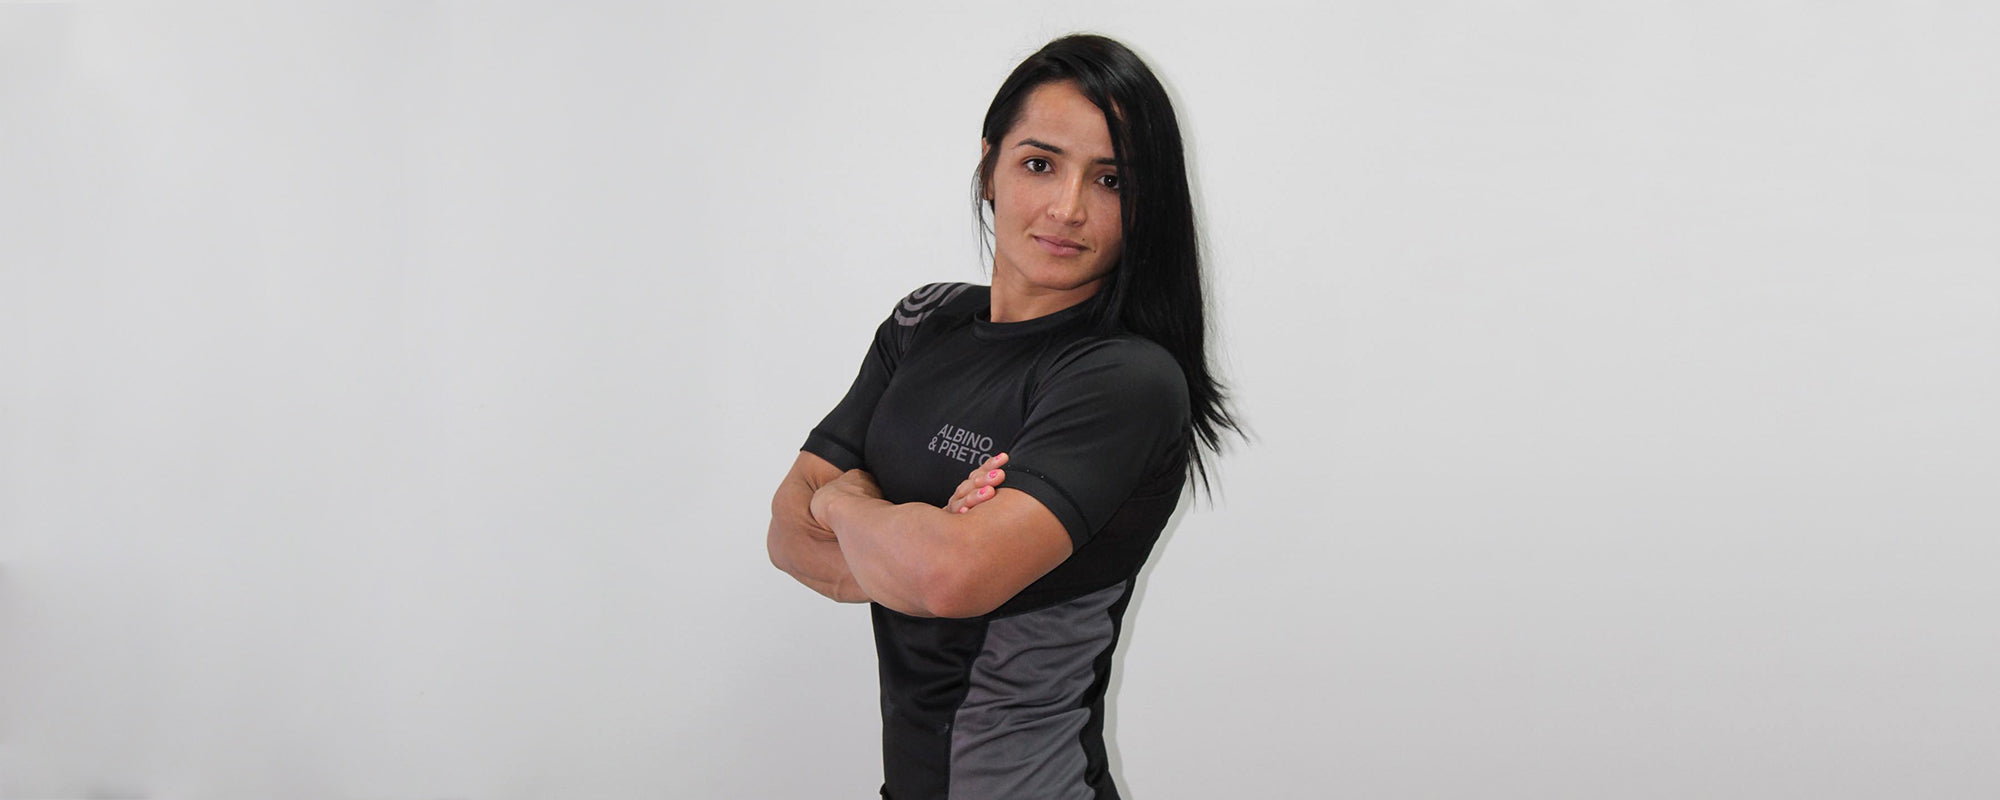 Talita Alencar - Top Notch World BJJ Champion